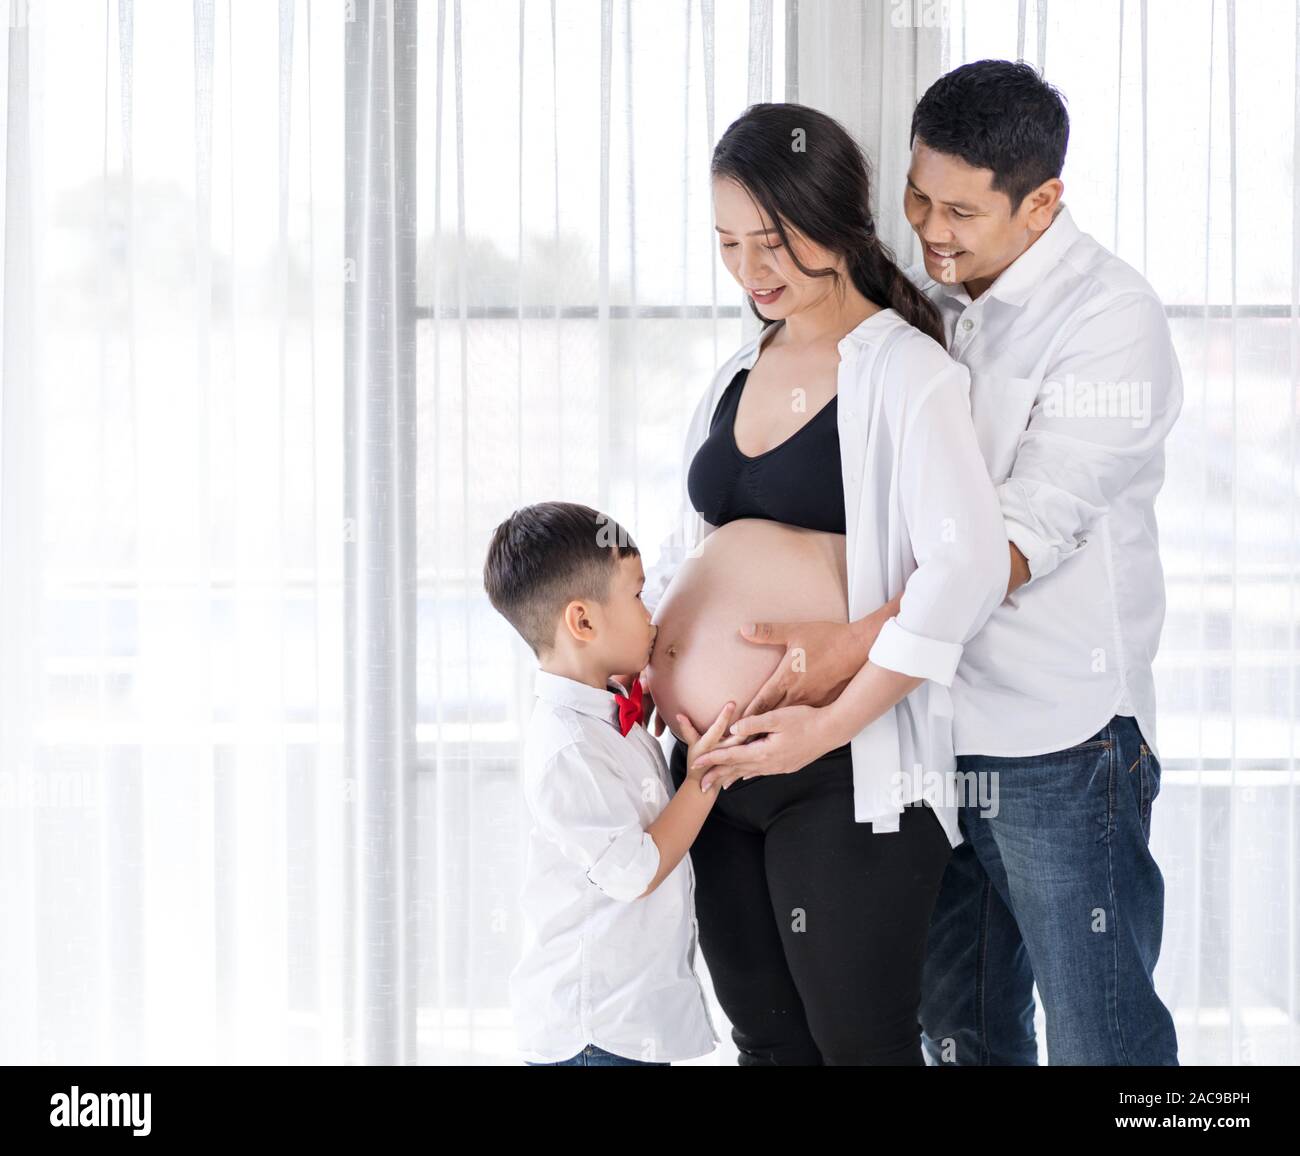 Видео жена забеременела. Семья с беременной женщиной.